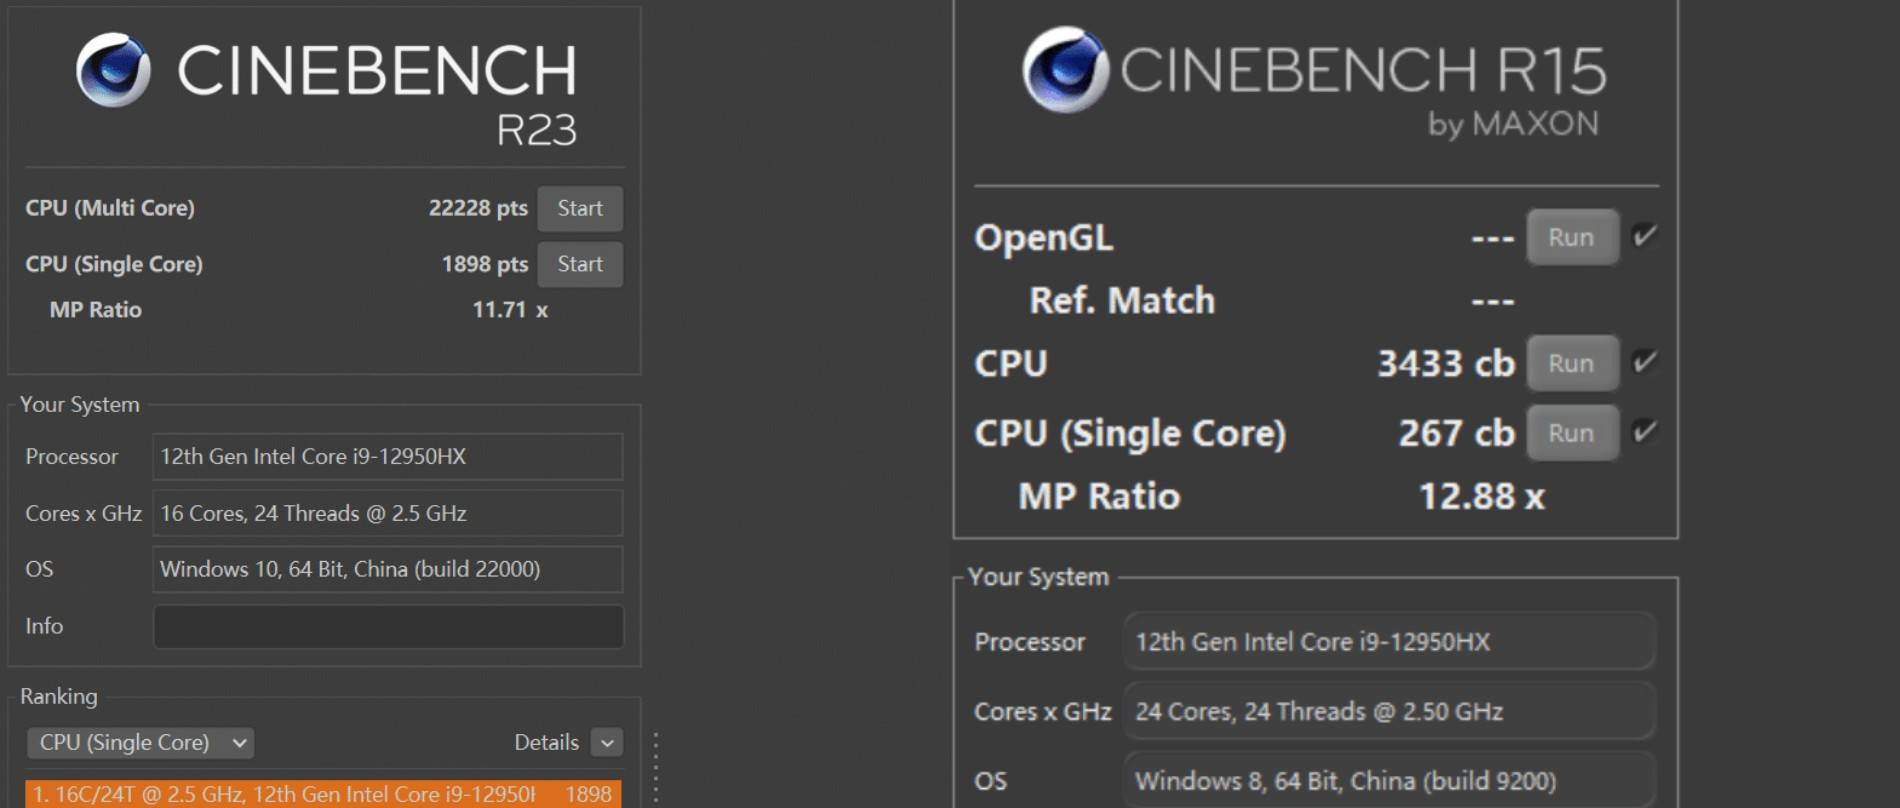 cinebench - Test ROG Gunslinger 6 Plus Super Competition Edition: questa volta, Intel ha davvero spremuto la dodicesima generazione di “dentifricio” a secco